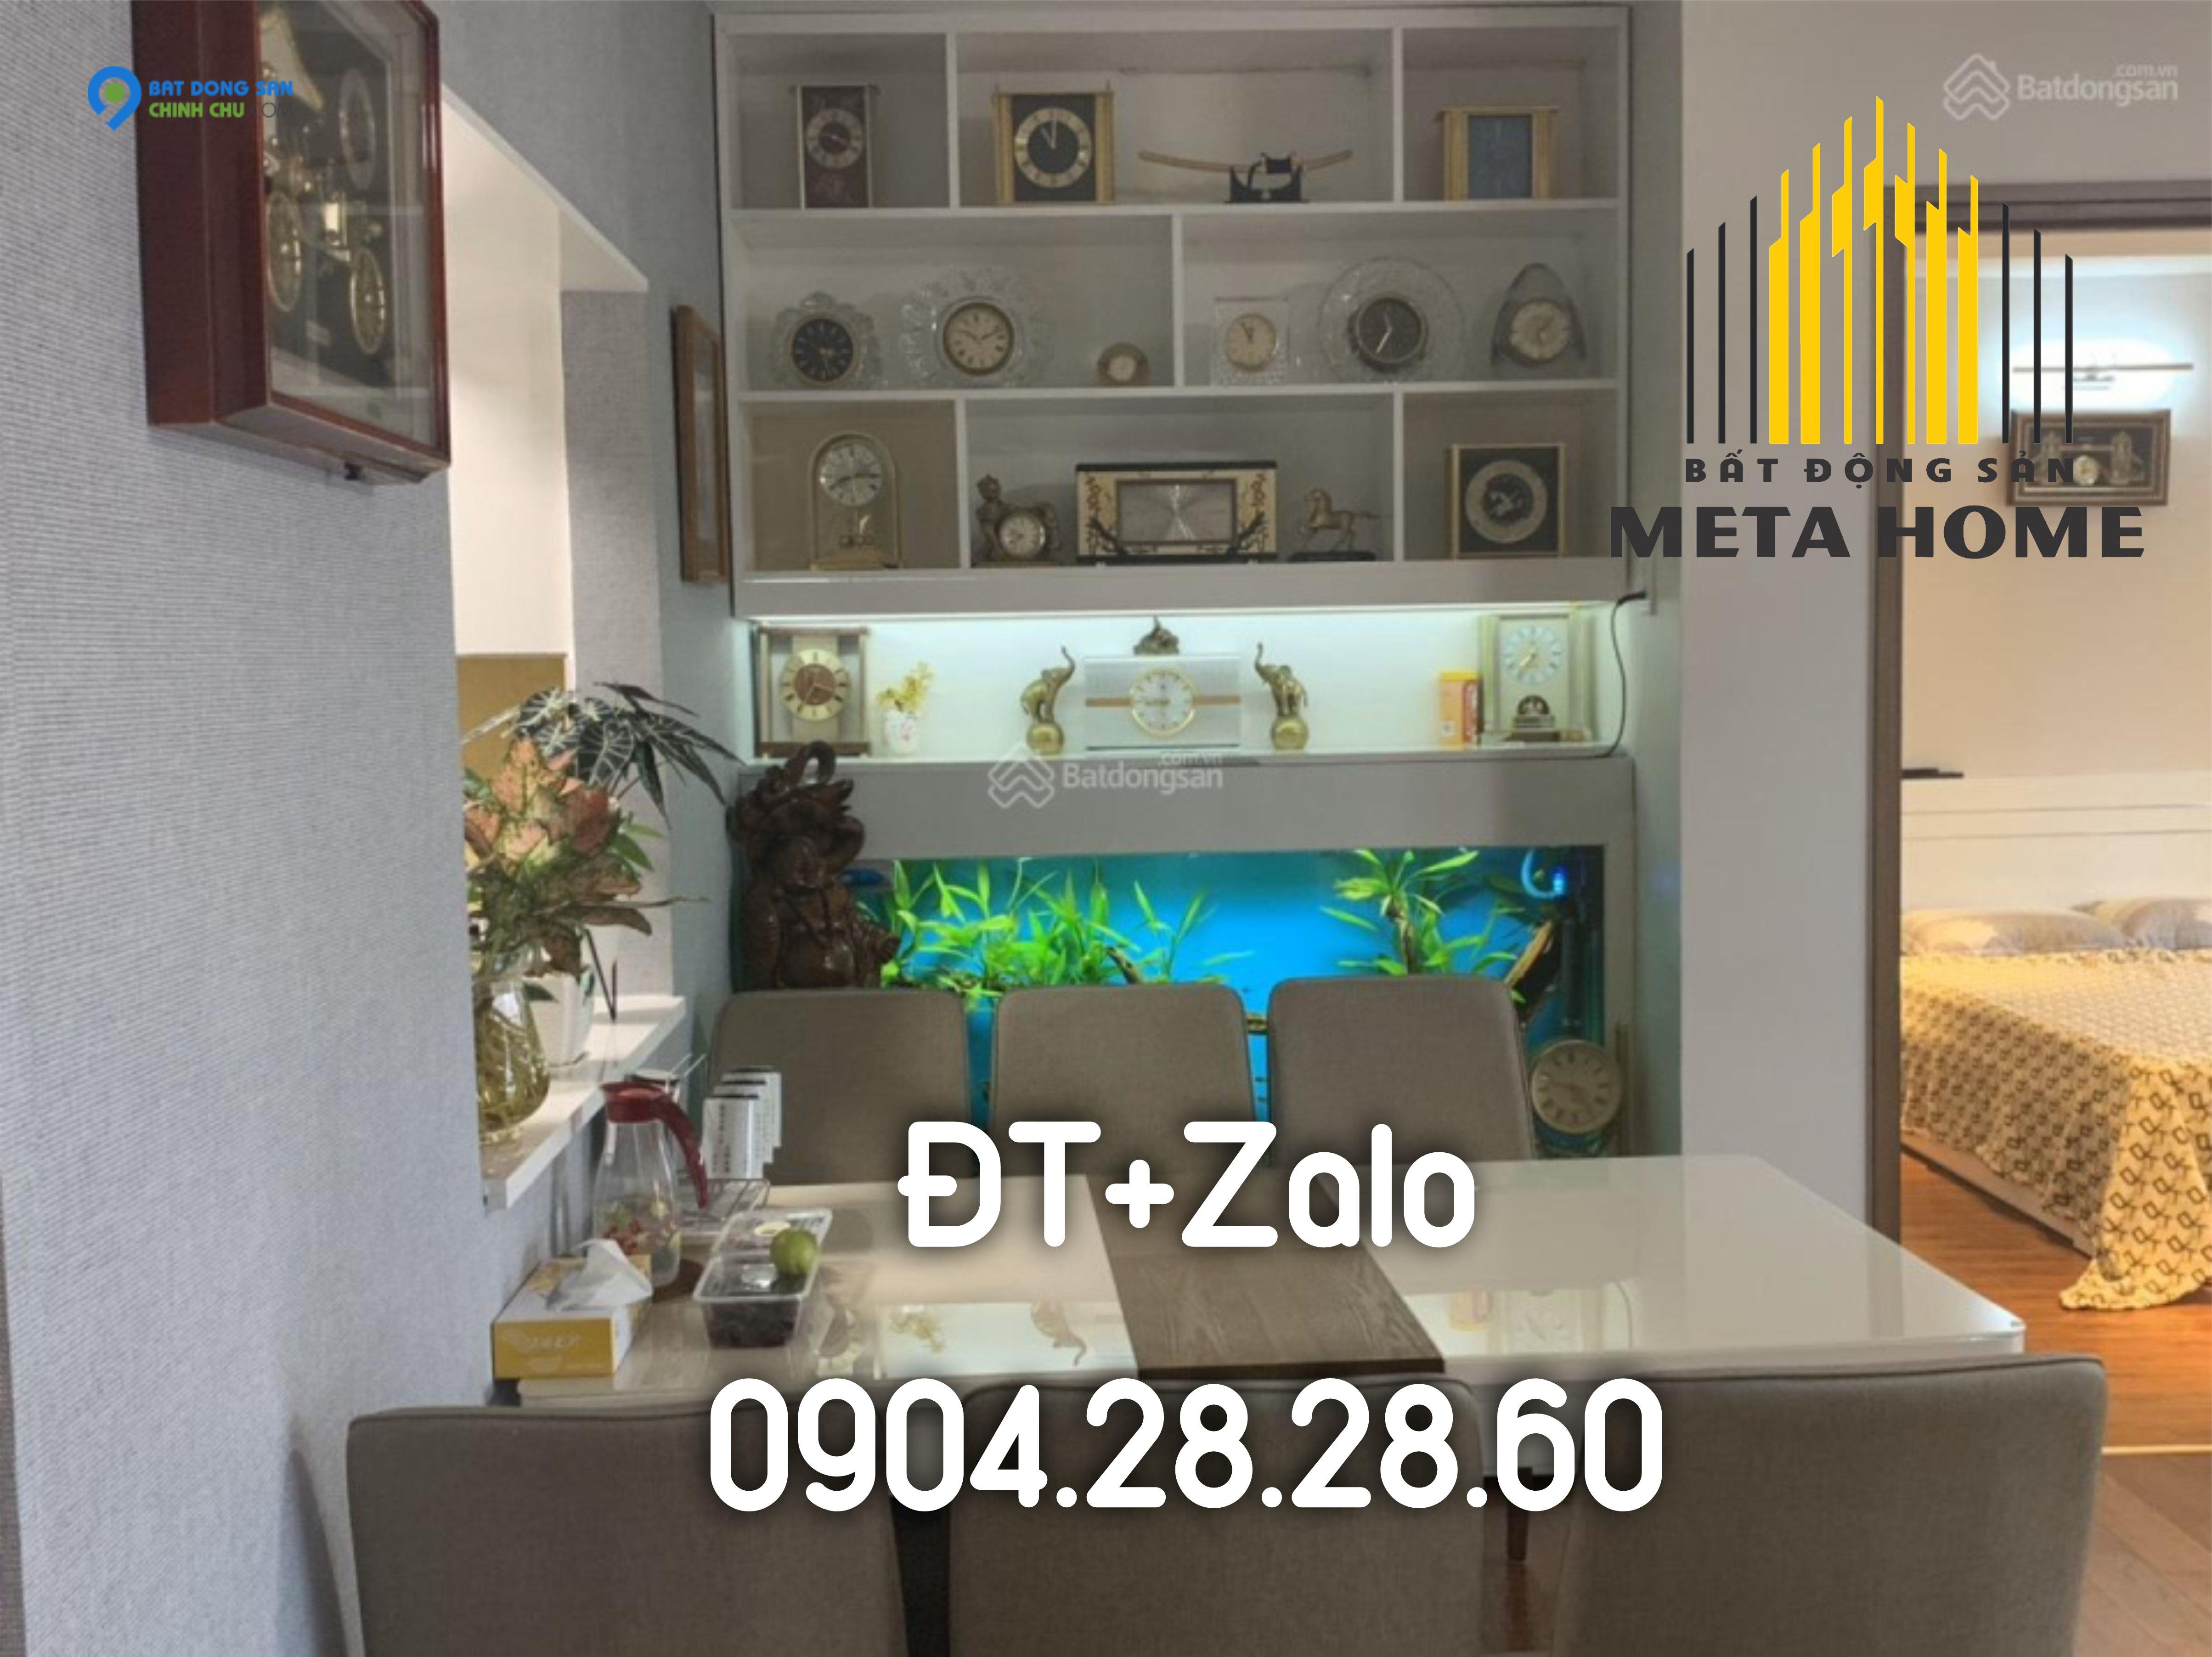 Cho thuê căn hộ SHP Plaza 2PN giá từ 12 tr/tháng - ĐT+ZALO 0904282860